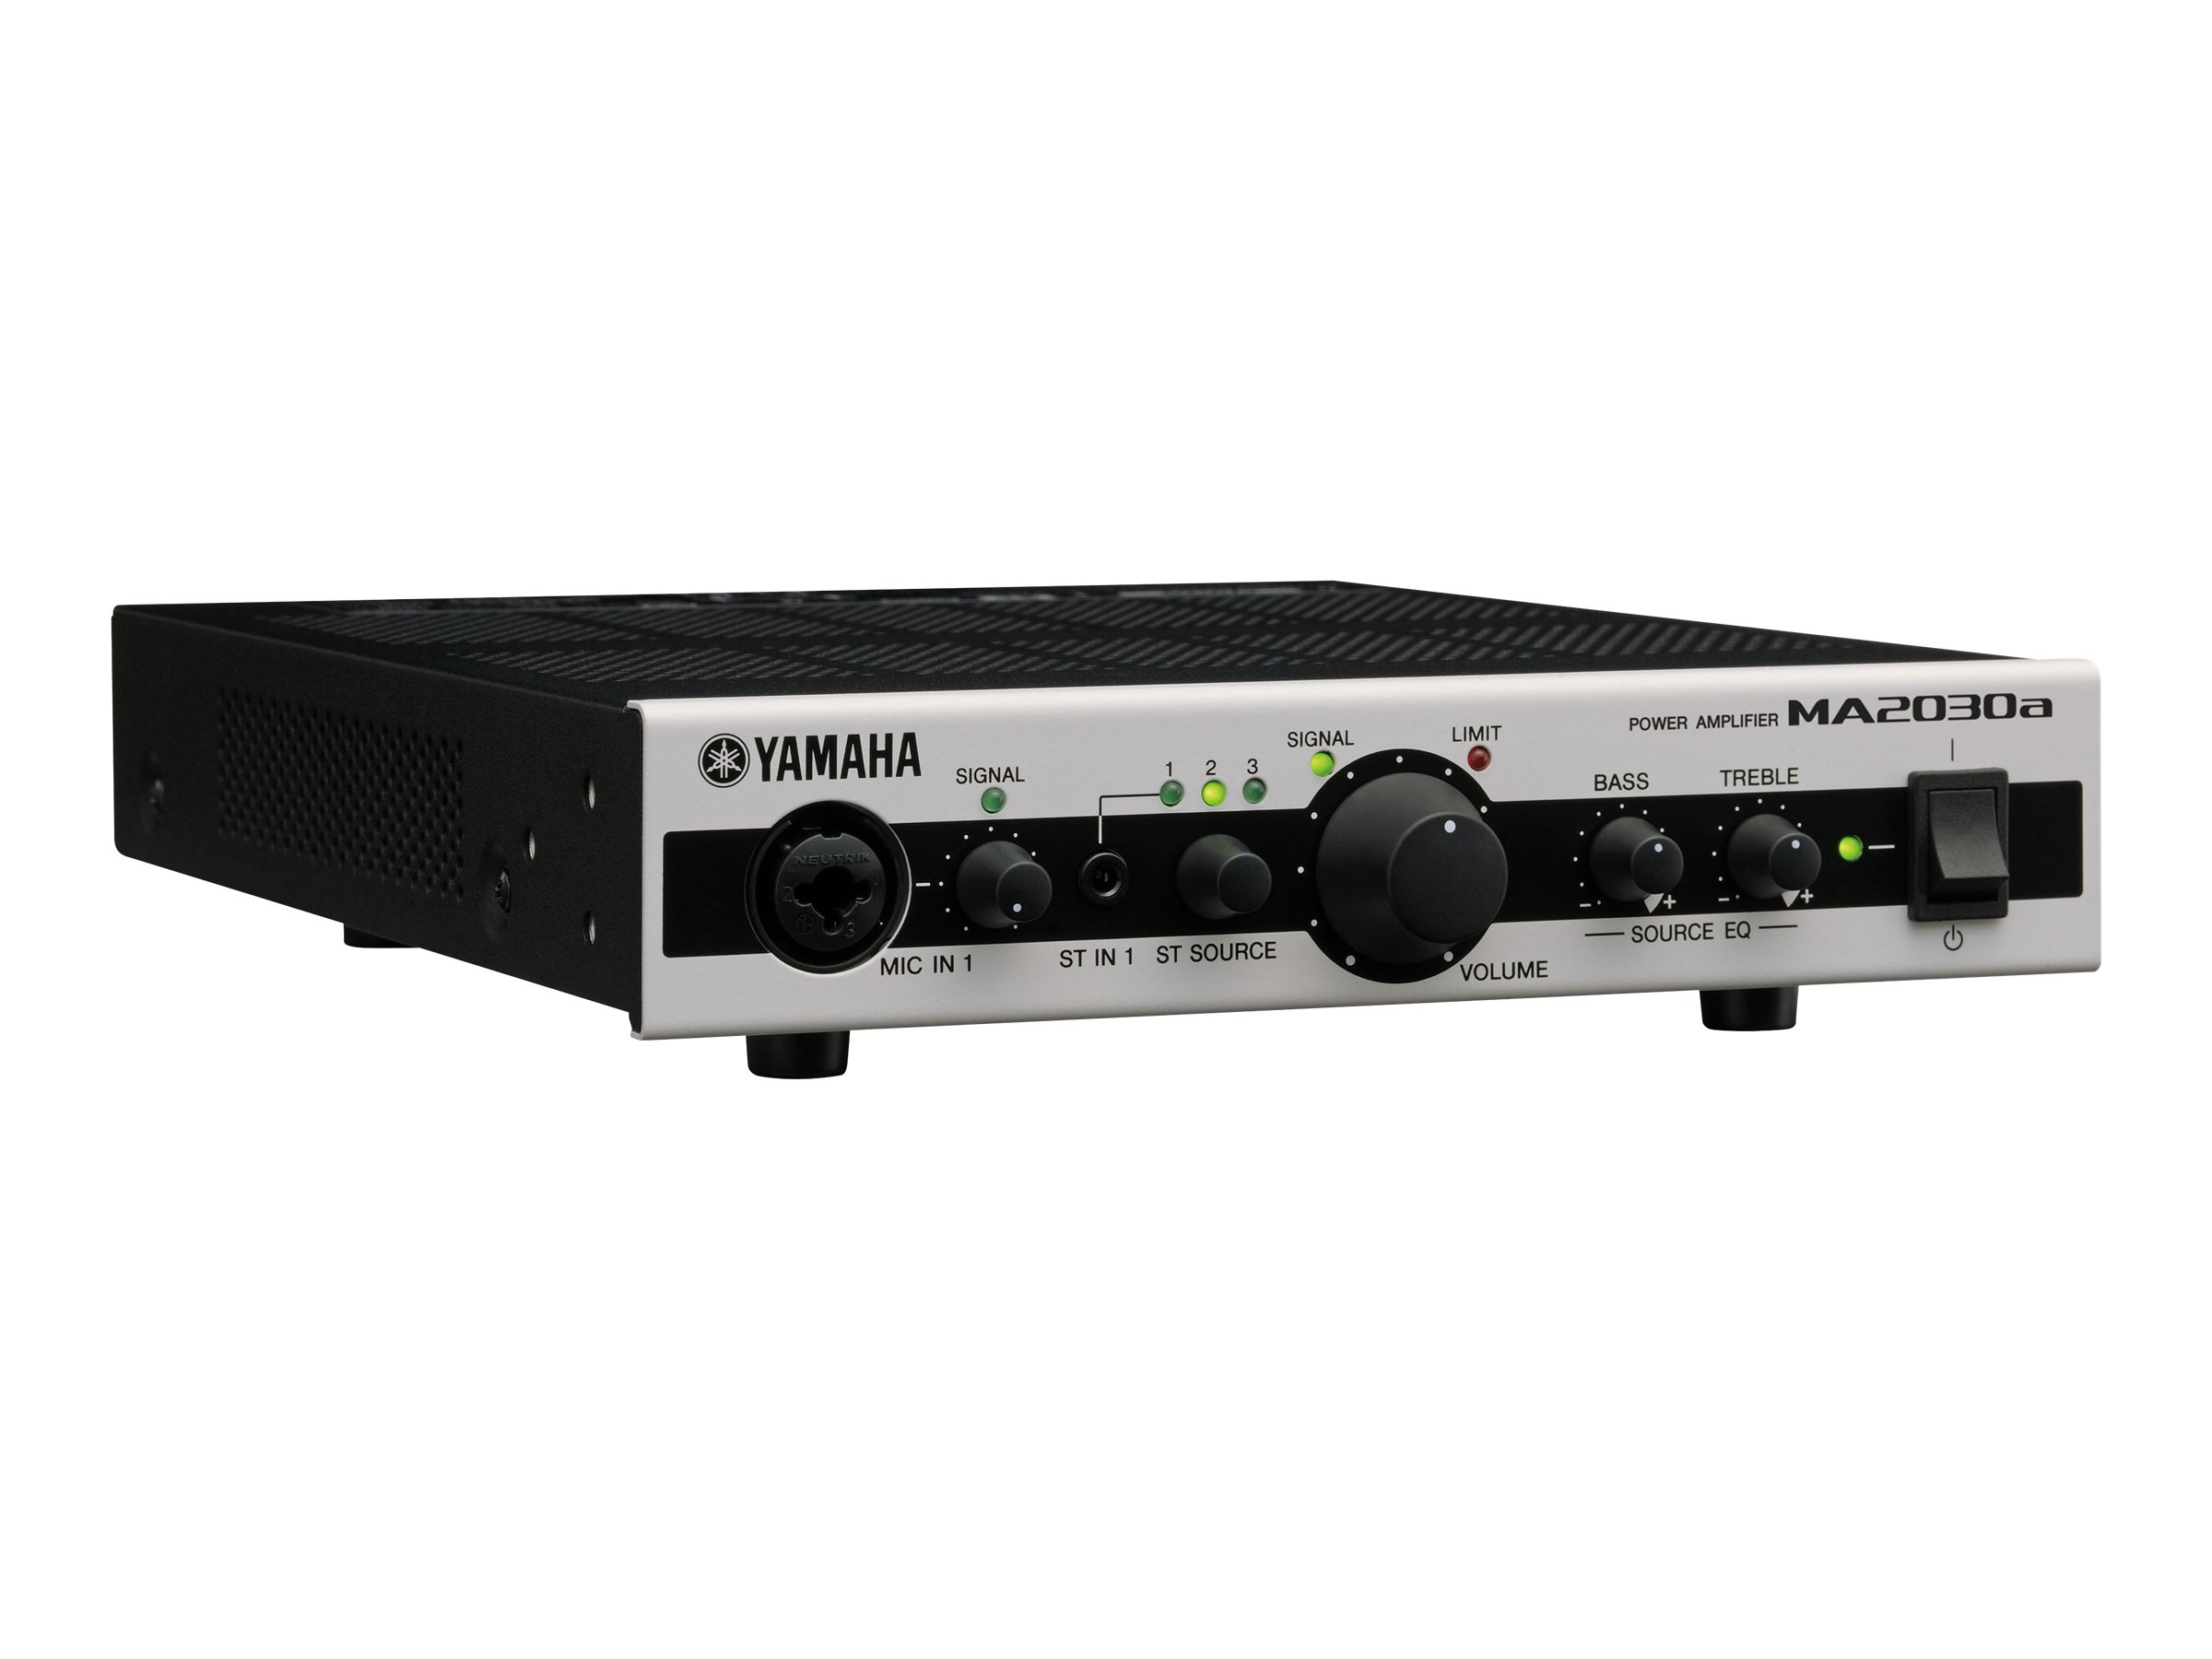 Yamaha MA2030a - Mixer amplifier